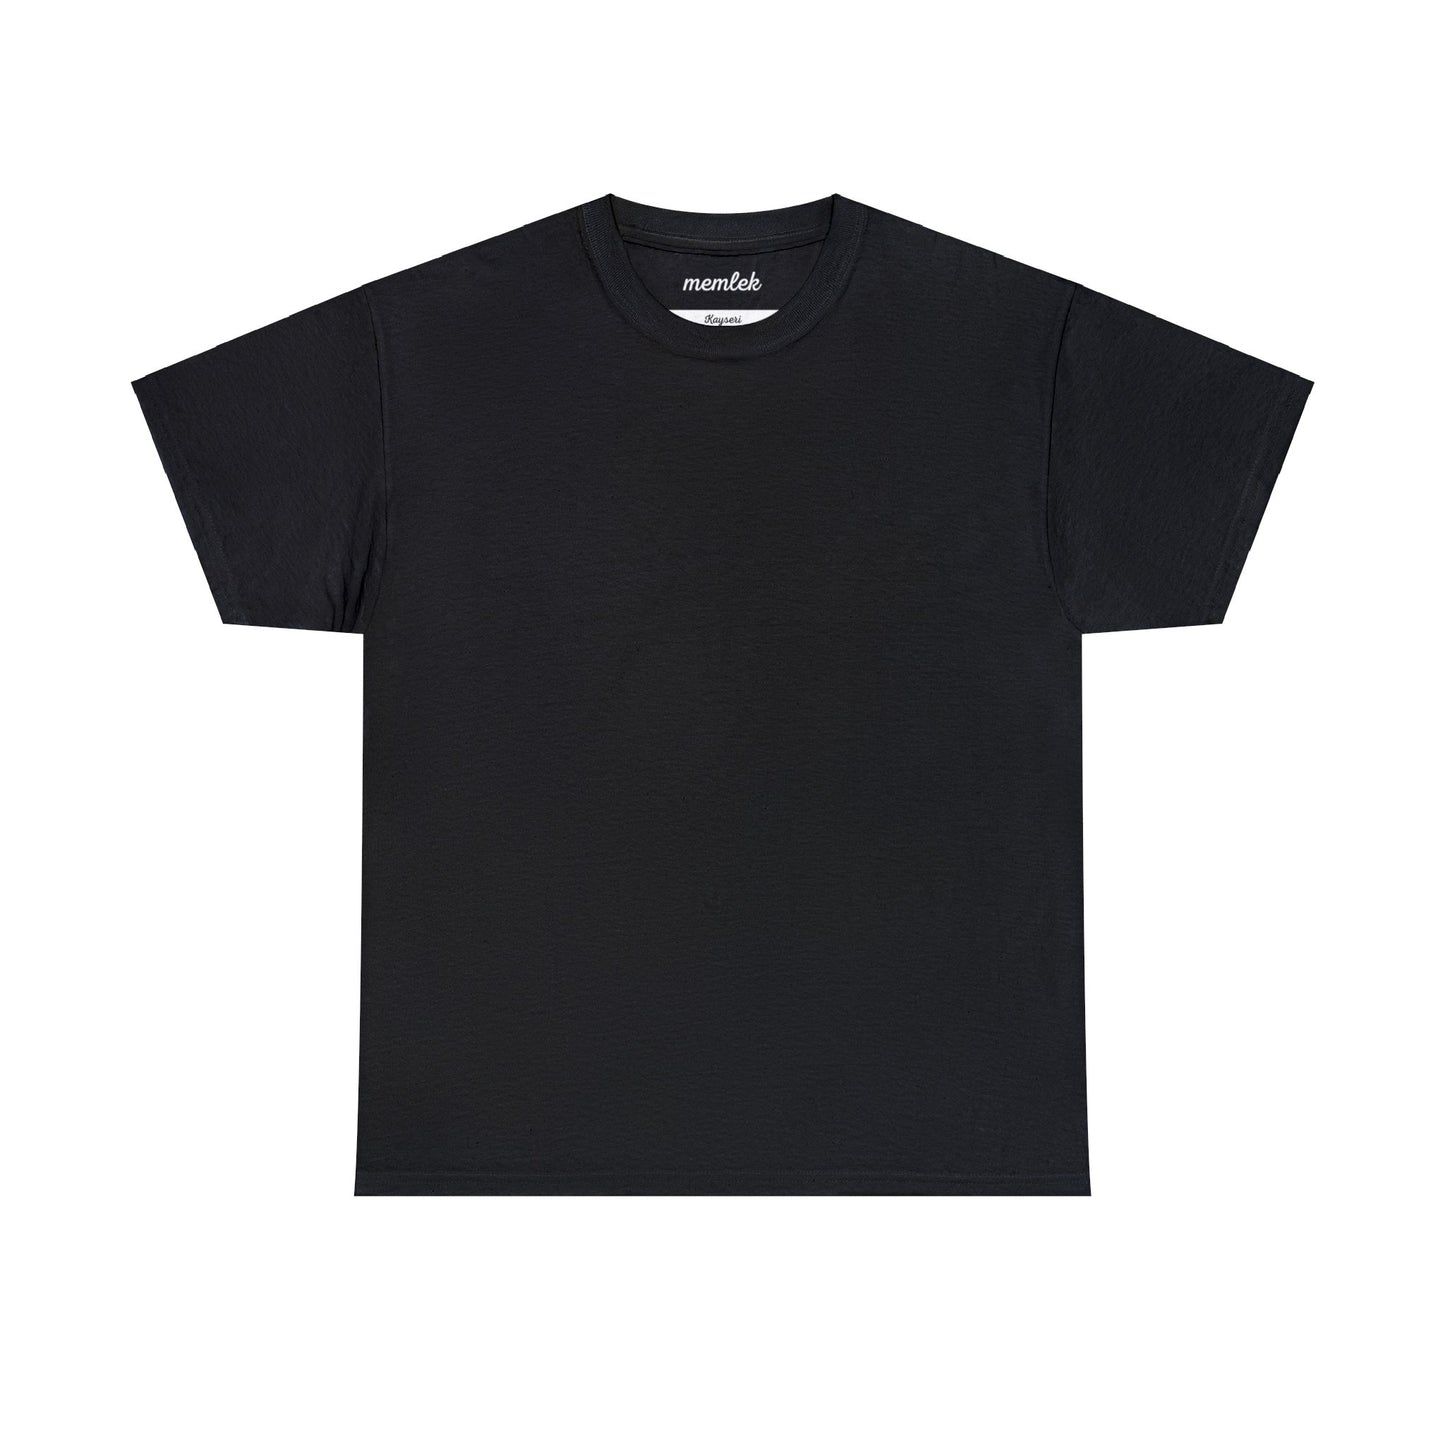 Kurt - 38 Kayseri - T-Shirt - Back Print - Black/White